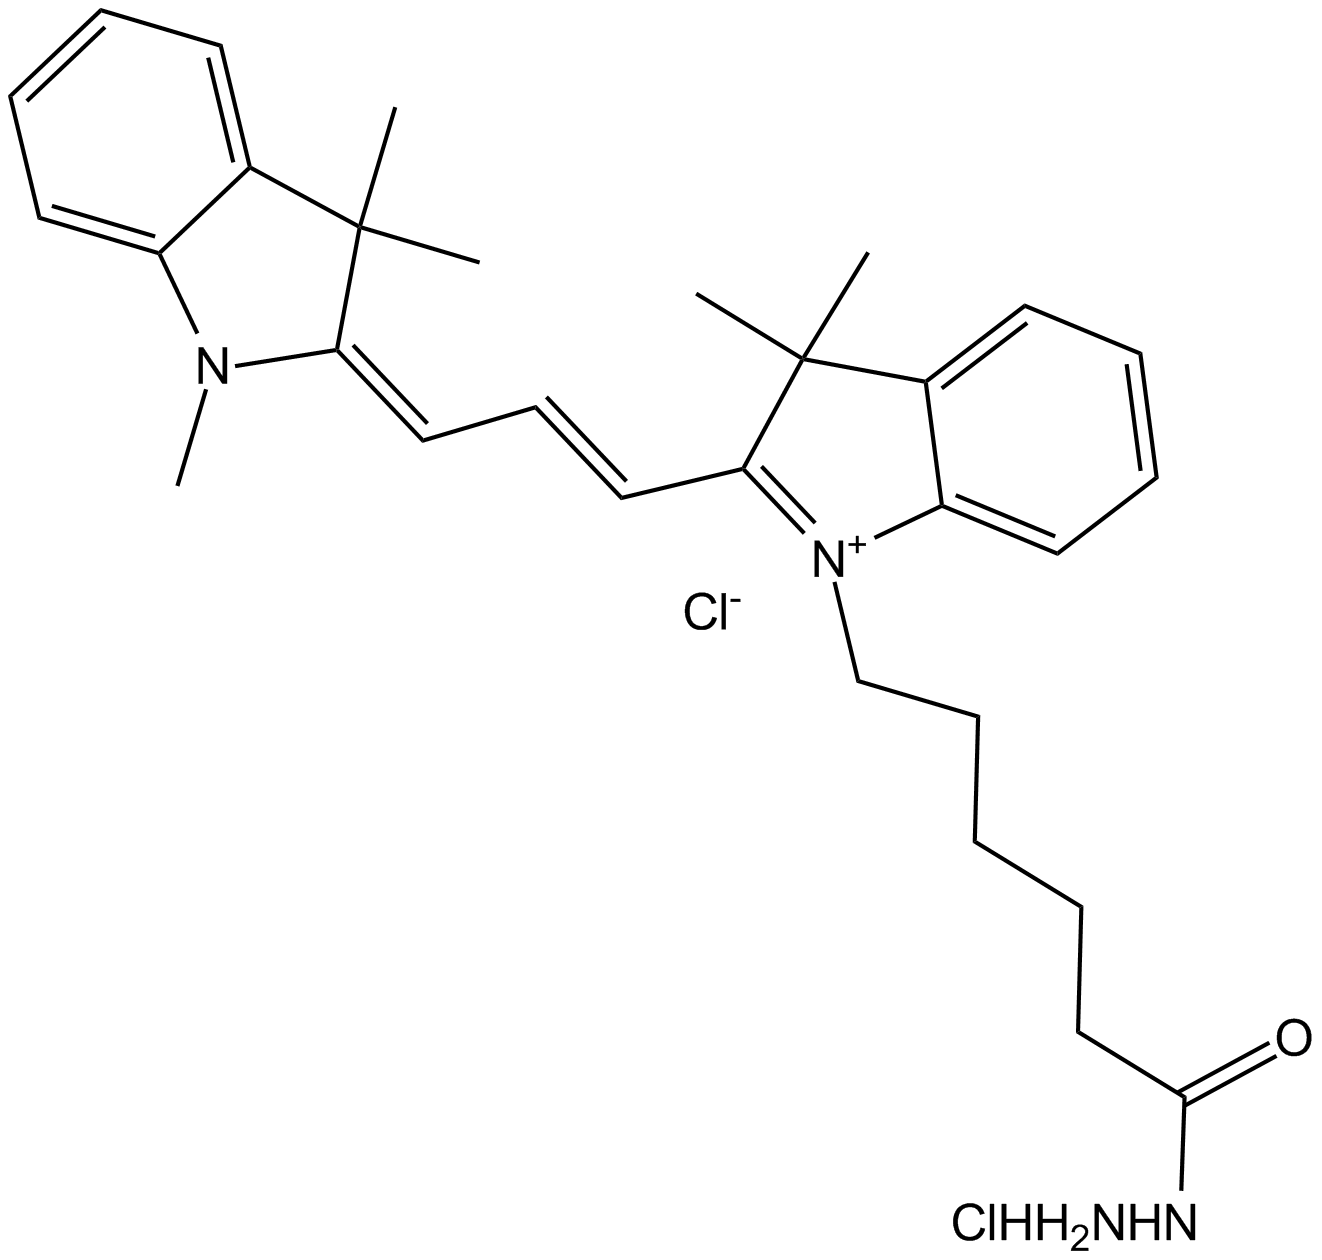 Cy3 hydrazide (non-sulfonated)